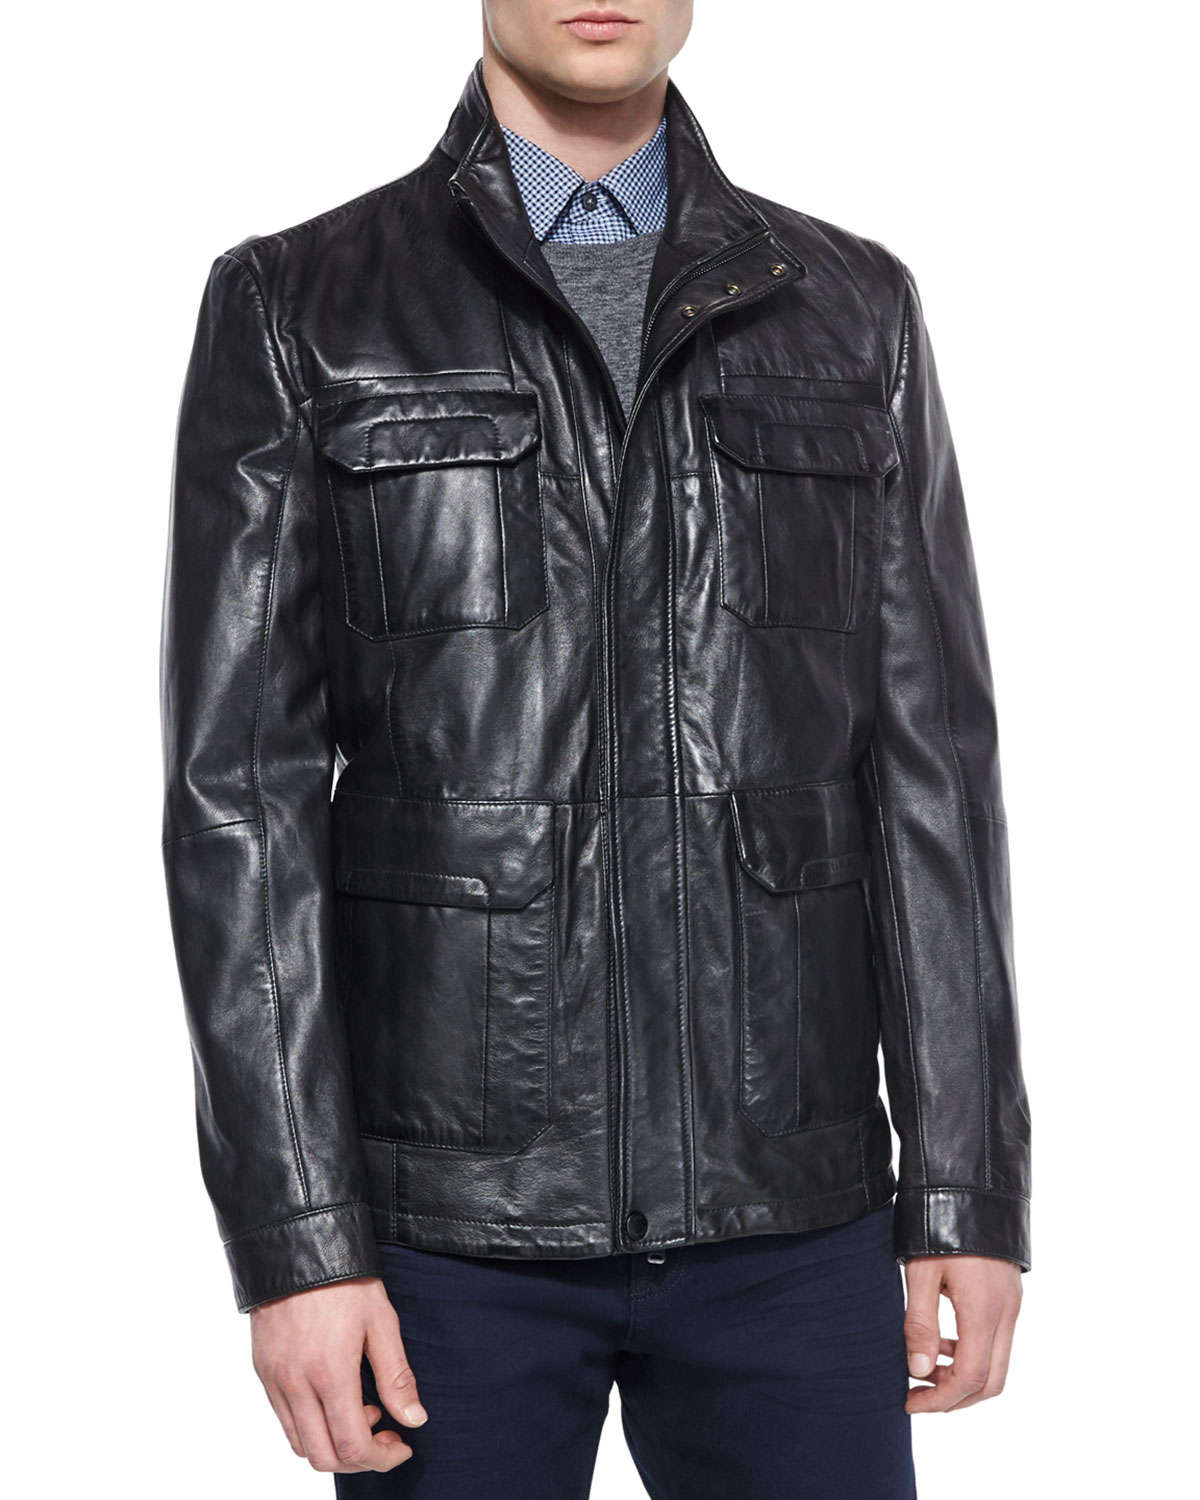 BOSS Leather Field Jacket in Black for Men - Lyst